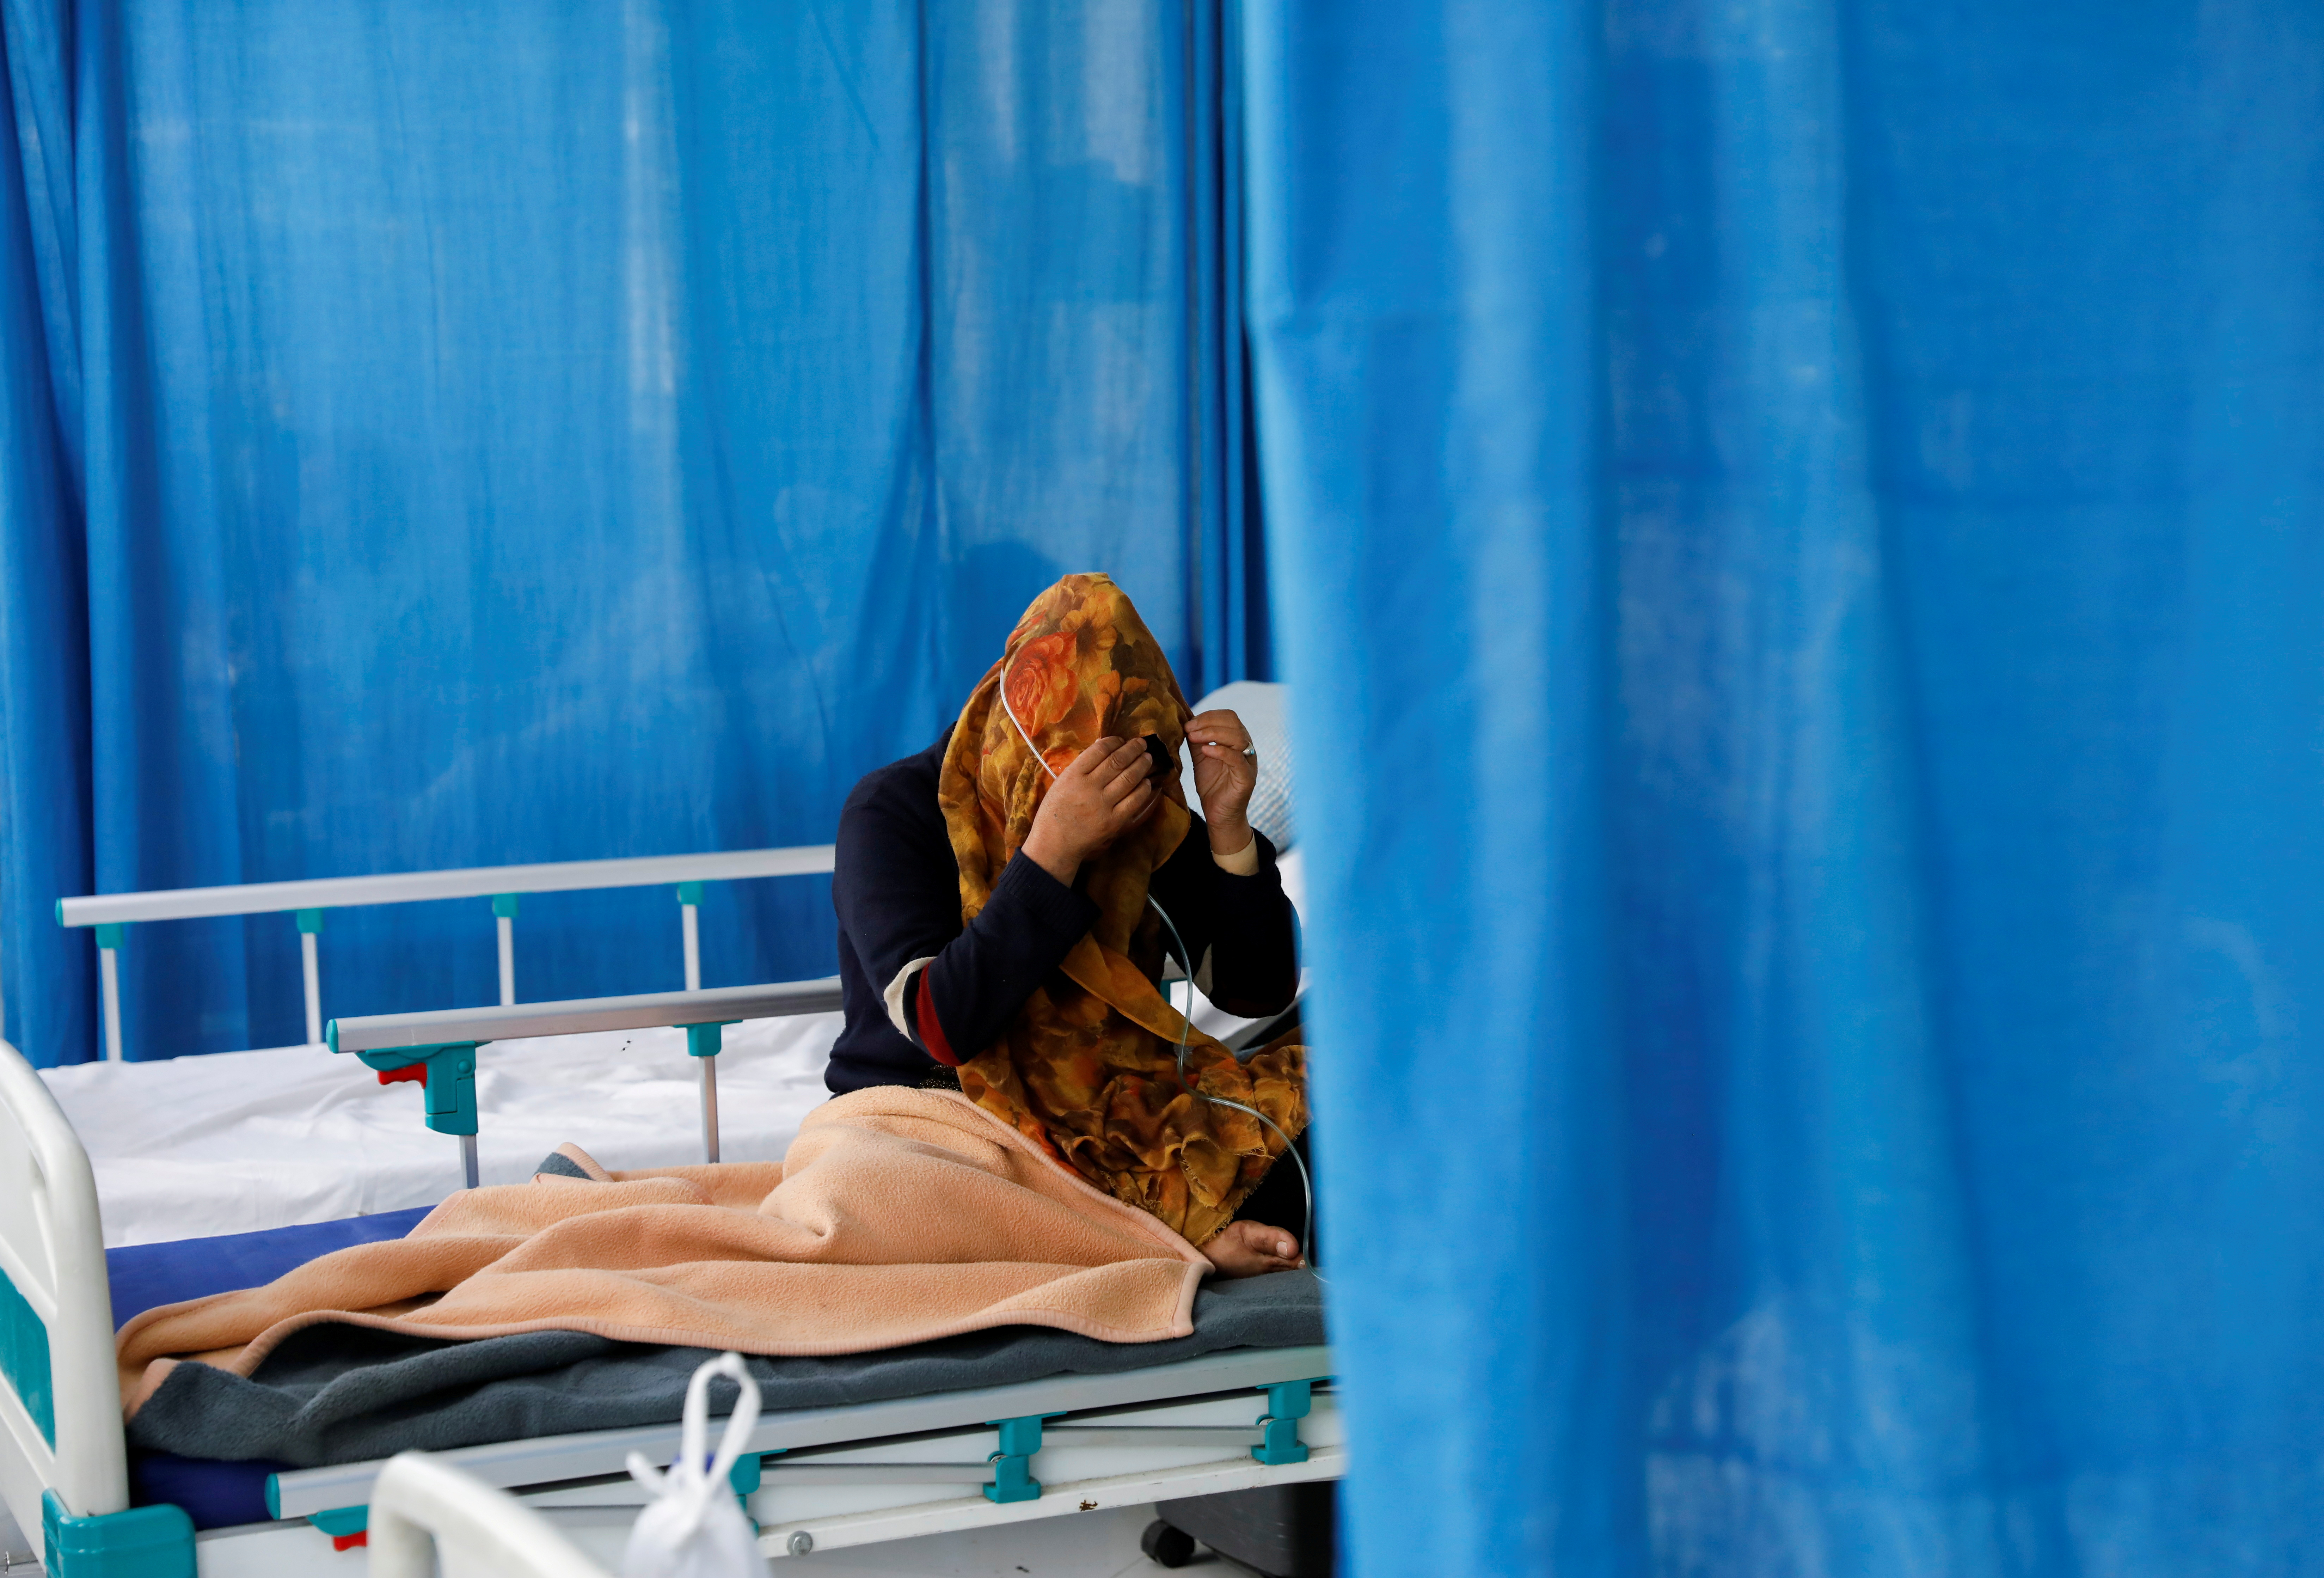 Un patient souffrant de COVID-19 reçoit un traitement à l'hôpital Afghan-Japon, au milieu de la propagation de la maladie à coronavirus (COVID-19), à Kaboul, Afghanistan, le 15 juin 2021. REUTERS/Stringer